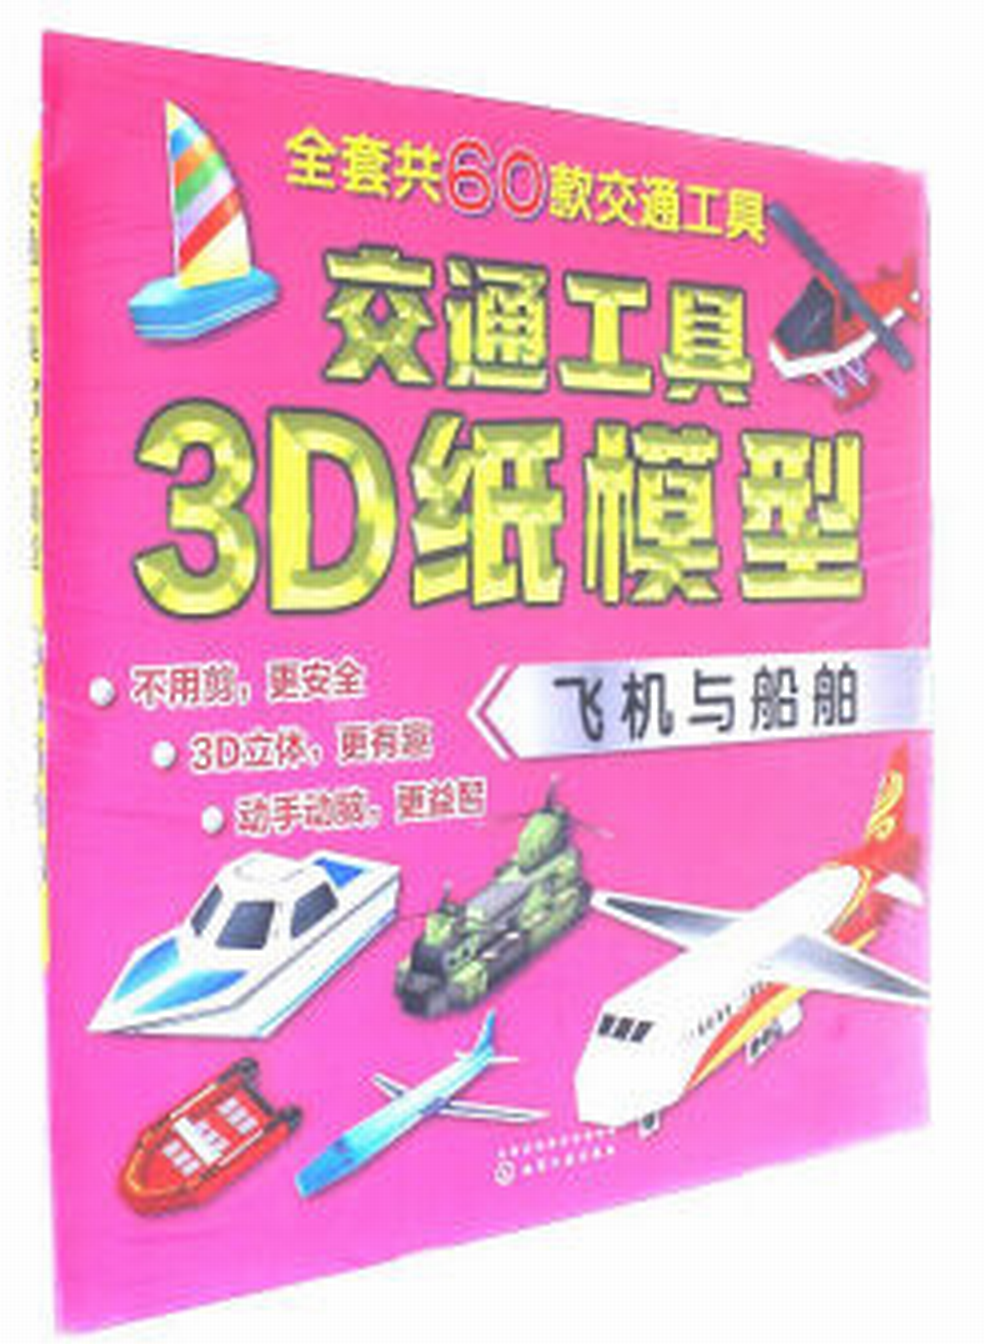 交通工具3D紙模型——飛機與船舶